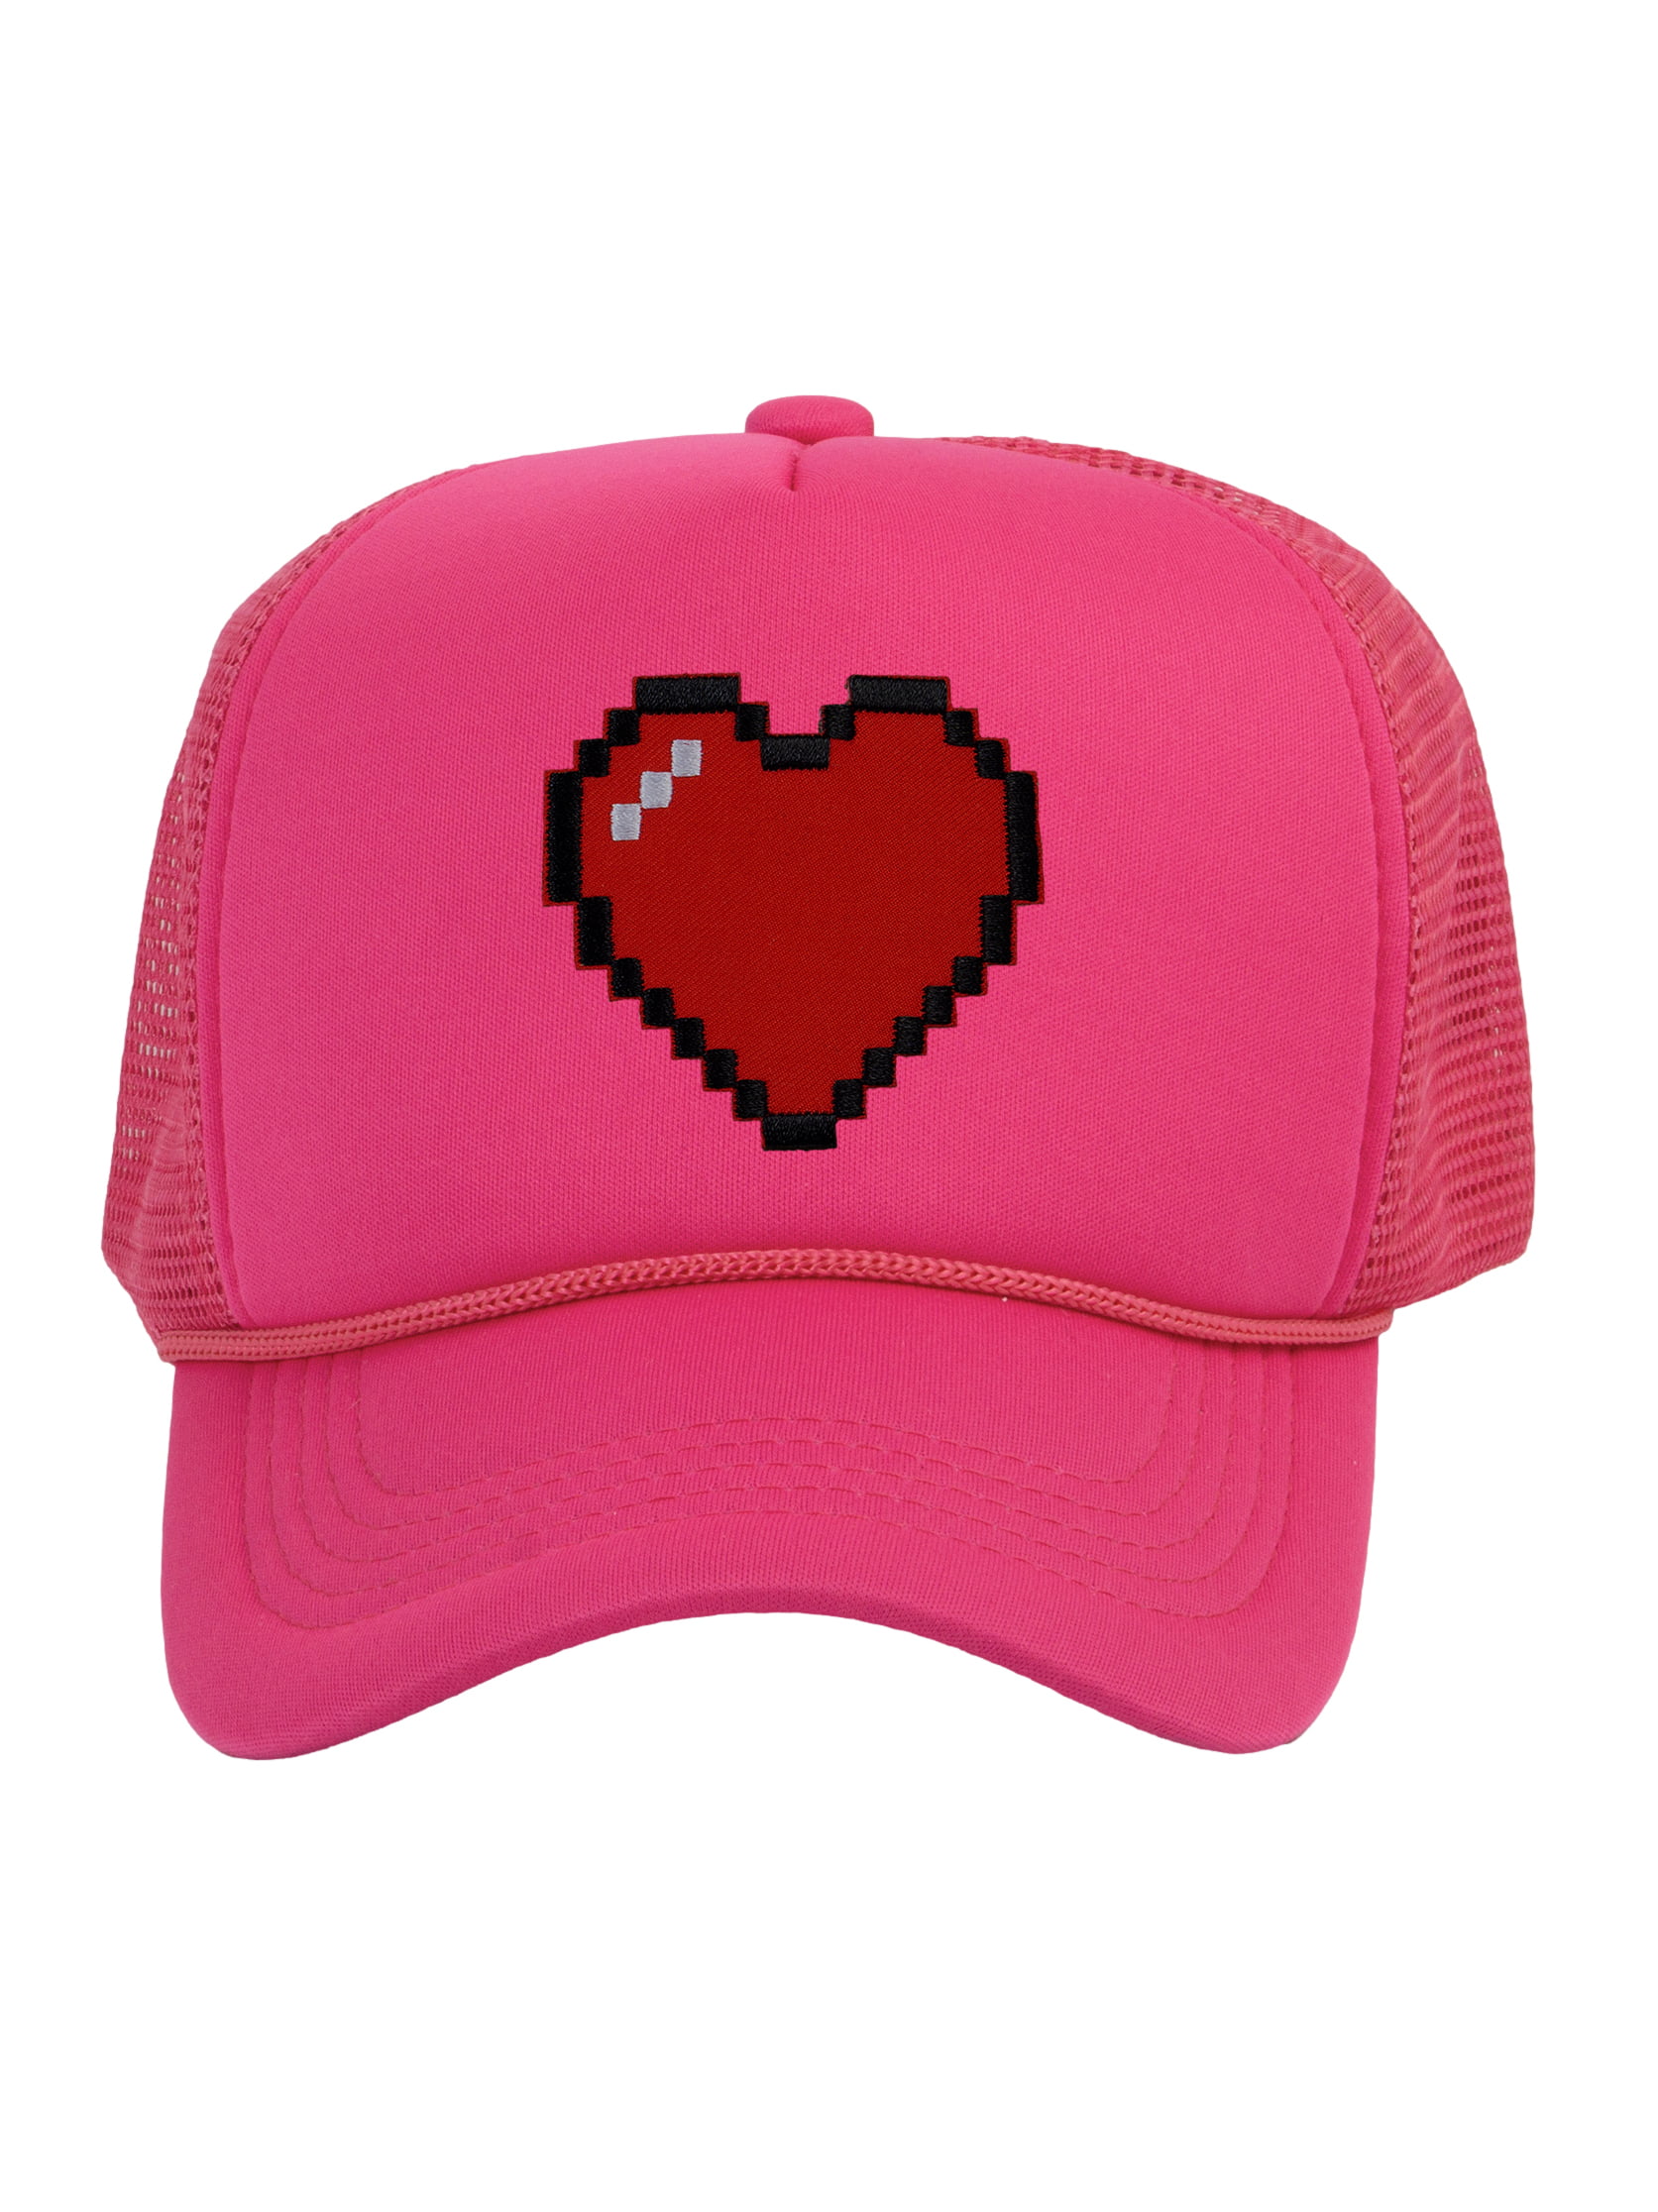 Men's 80's Retro Large 8 Bit Pixelated Heart Gamer Trucker Hat, Red